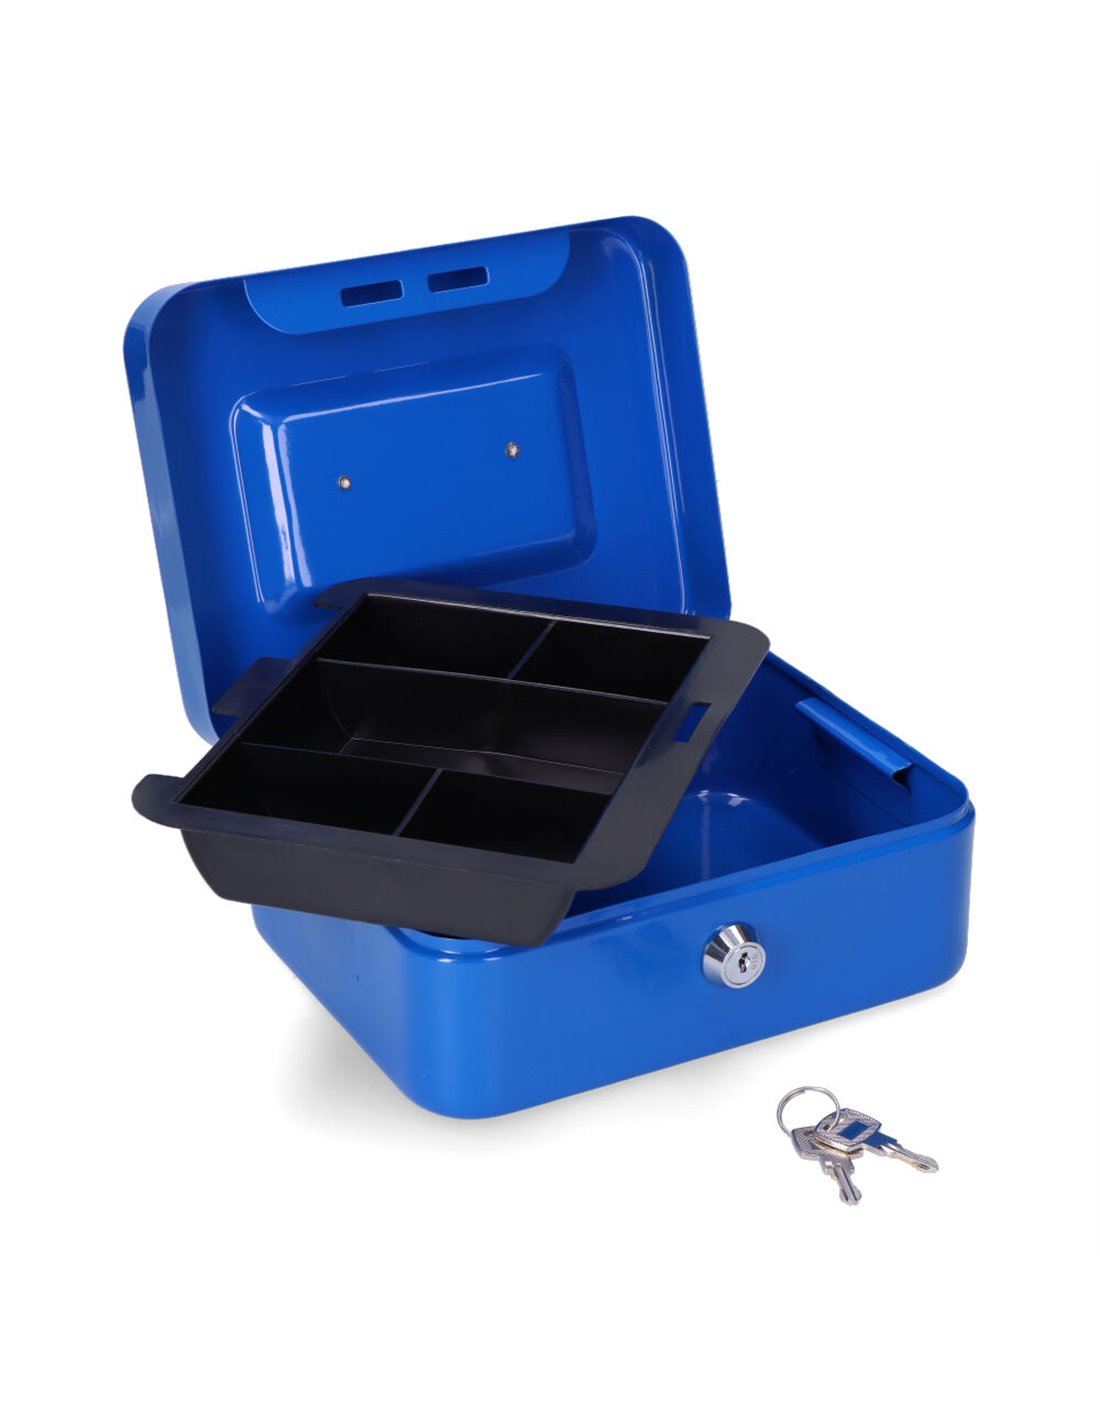 Caja Caudales con Combinacion Azul 250x180x90mm